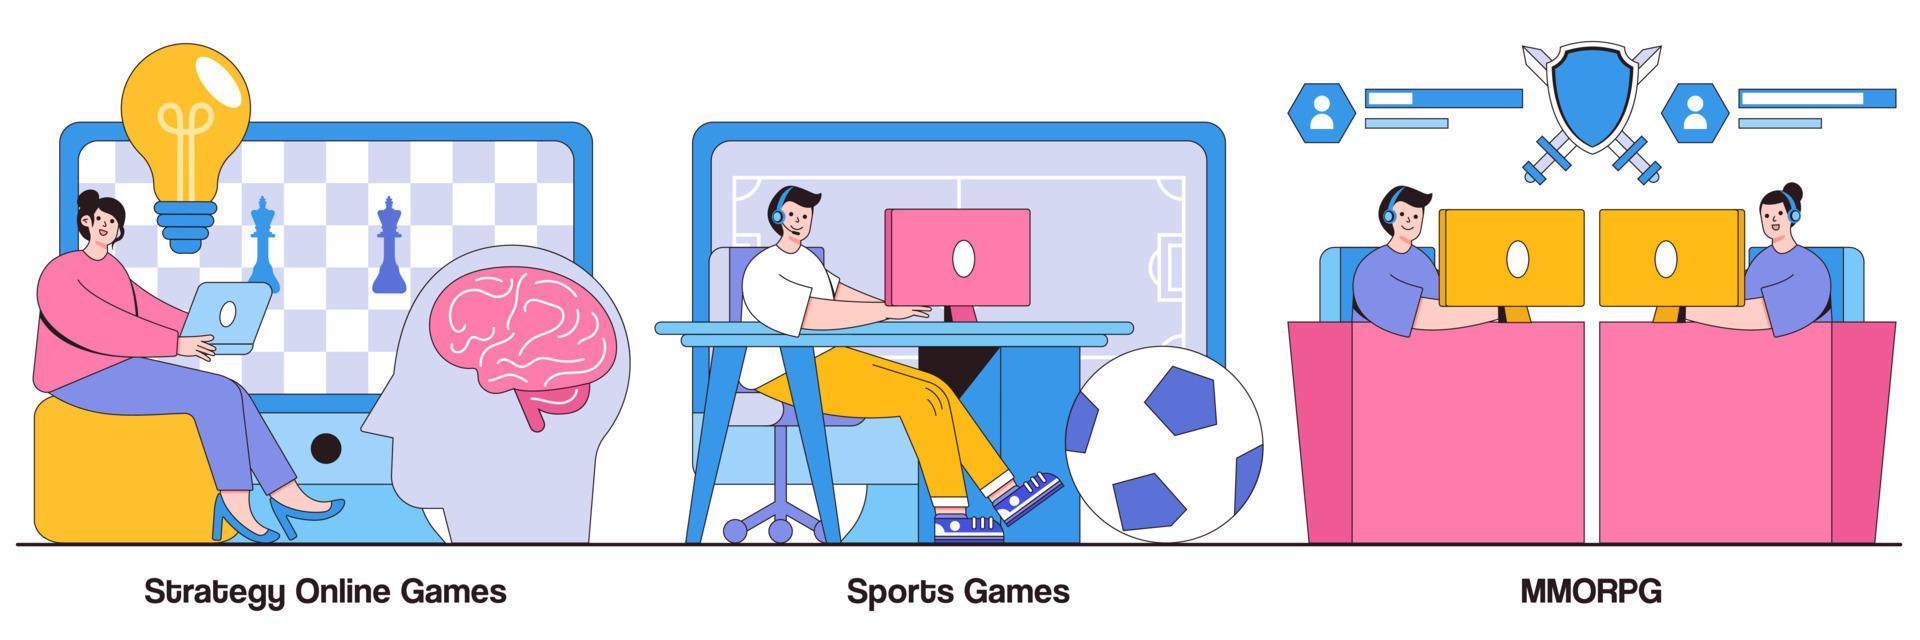 jeux de stratégie en ligne, jeux de sport, mmorpg avec pack d'illustrations de personnages vecteur